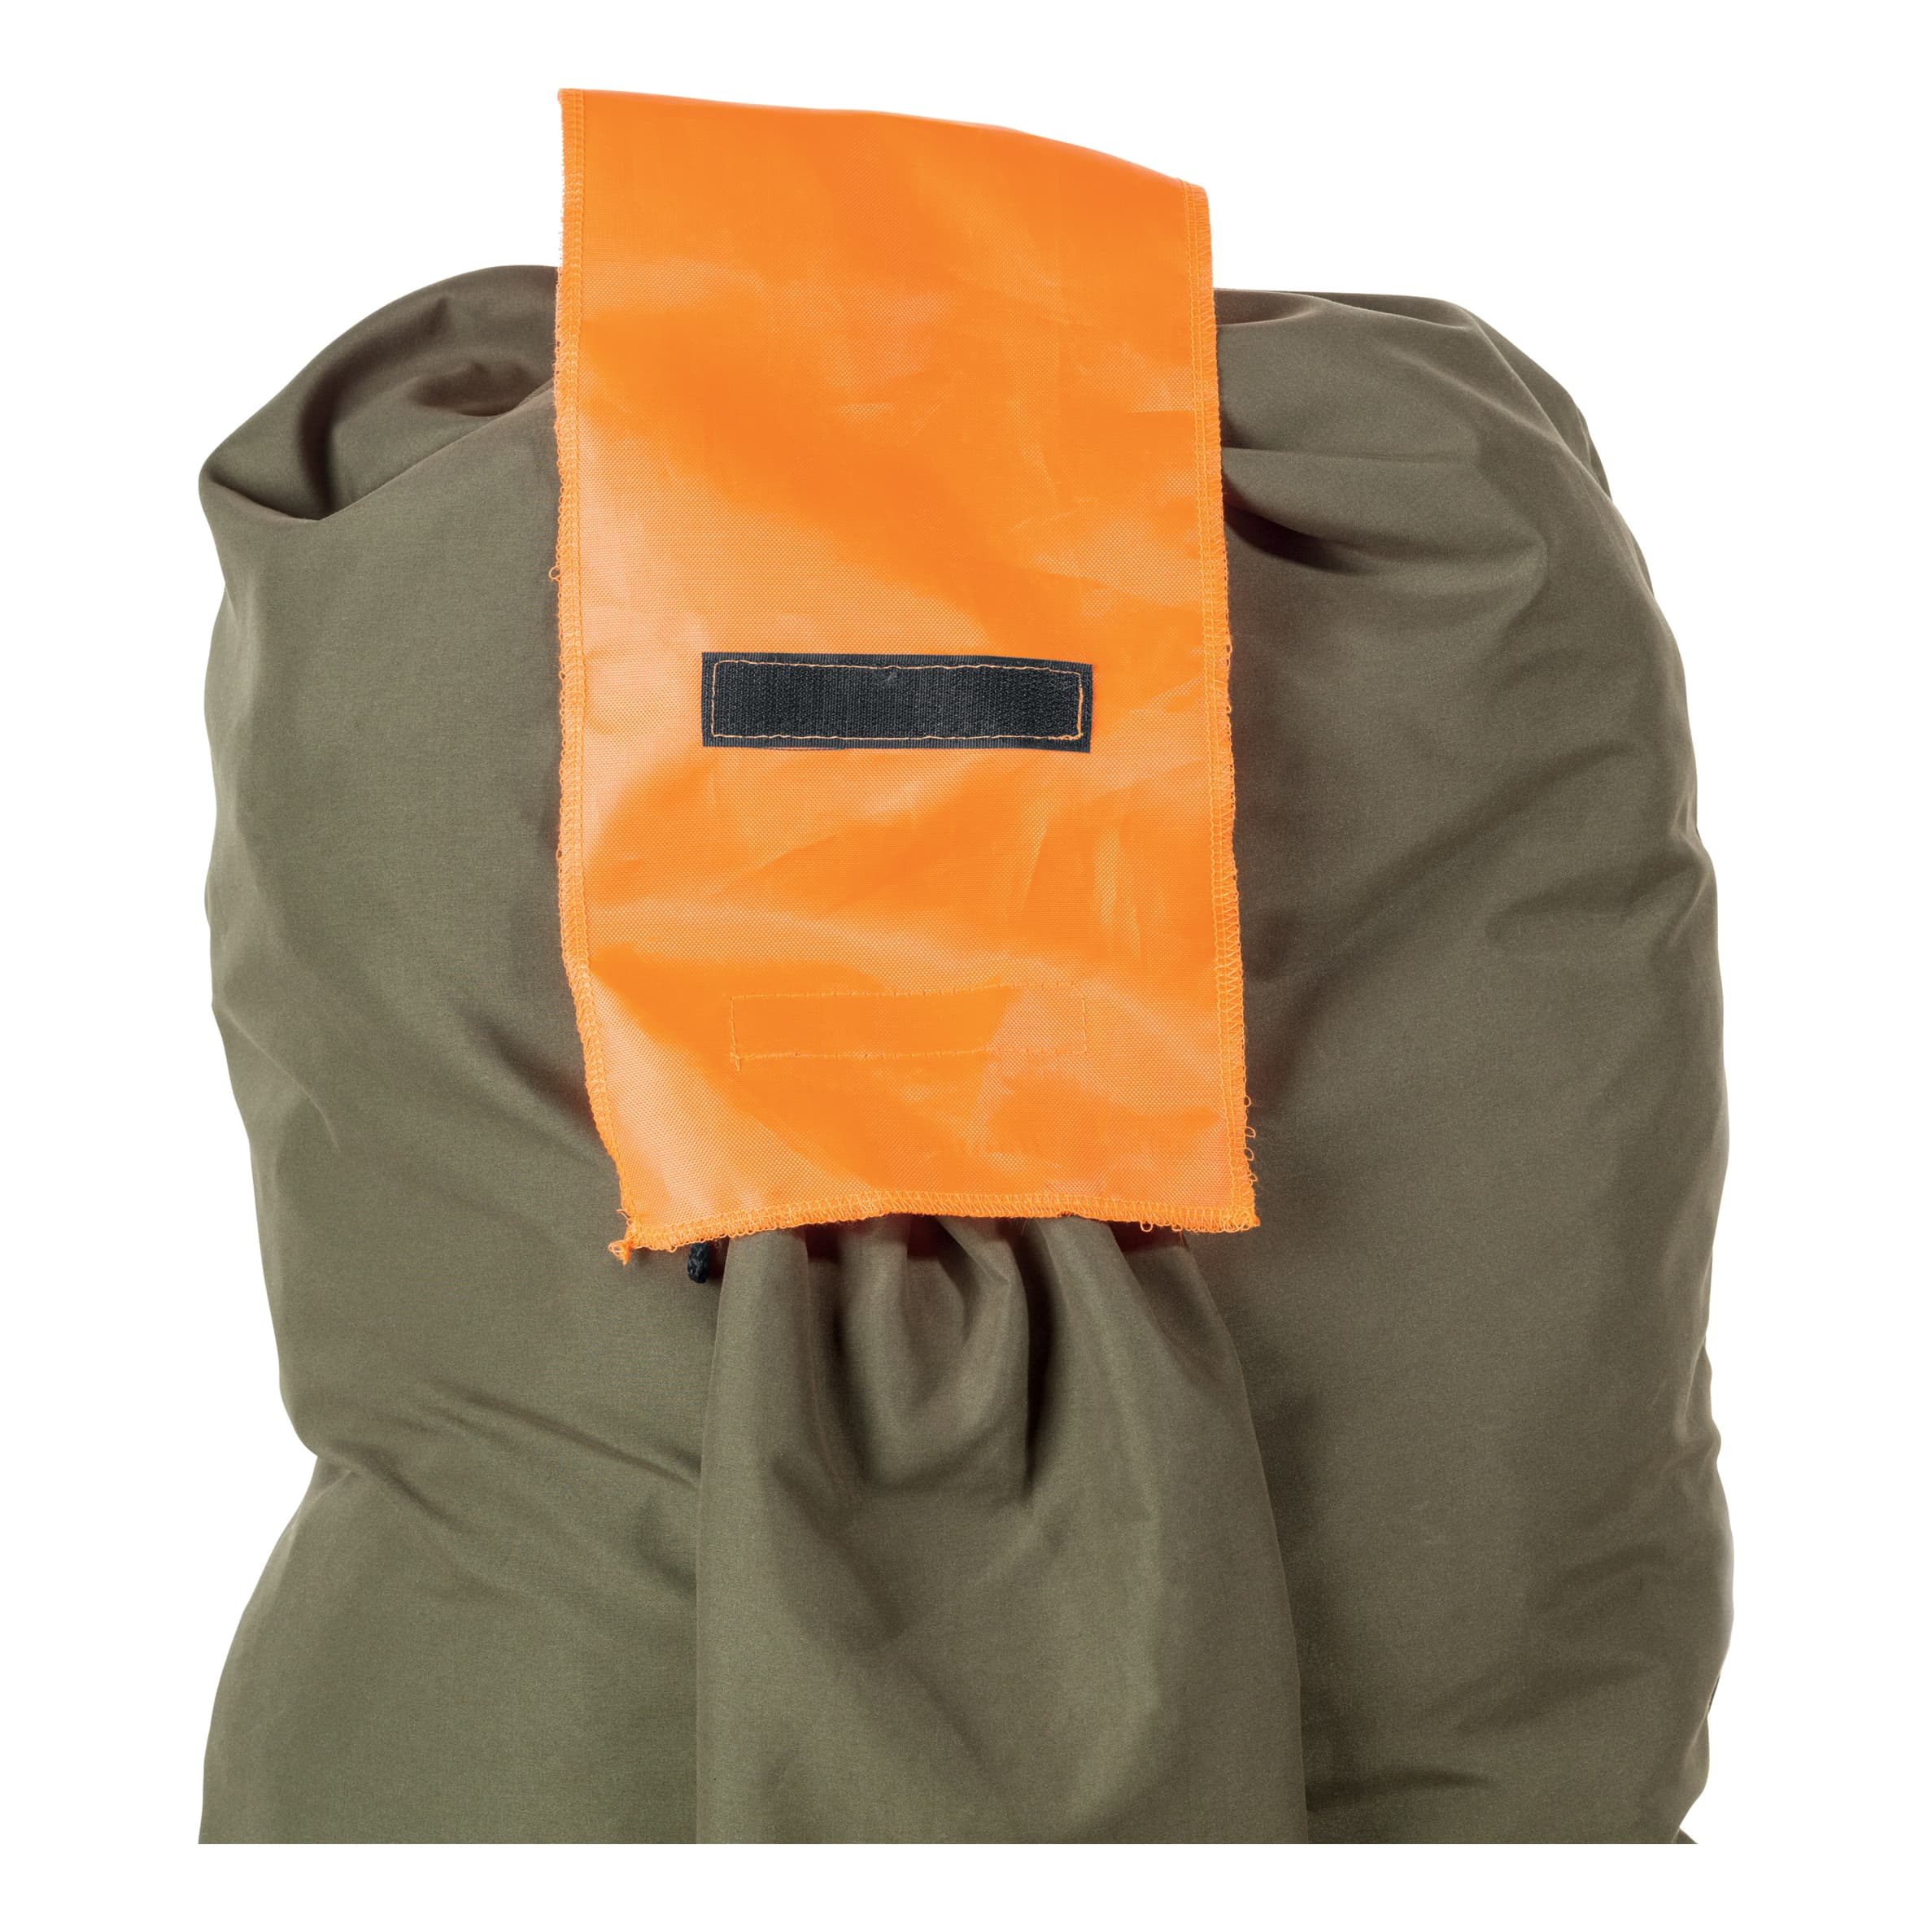 RedHead® Turkey Decoy BagPack - safety flag